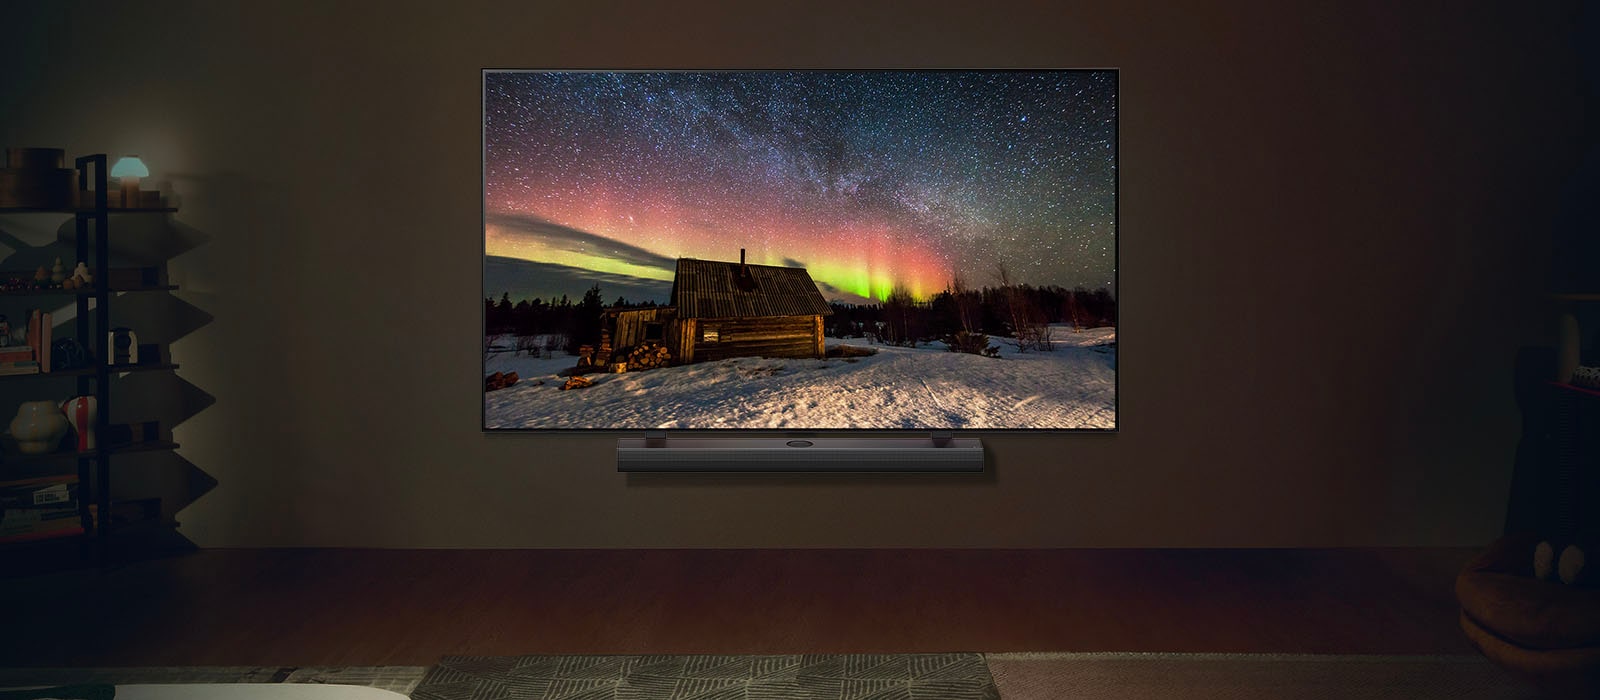 O imagine a unui LG TV și LG Soundbar într-un spațiu de locuit modern în timpul nopții. Imaginea aurorei boreale este afișată cu nivelurile ideale de luminozitate.